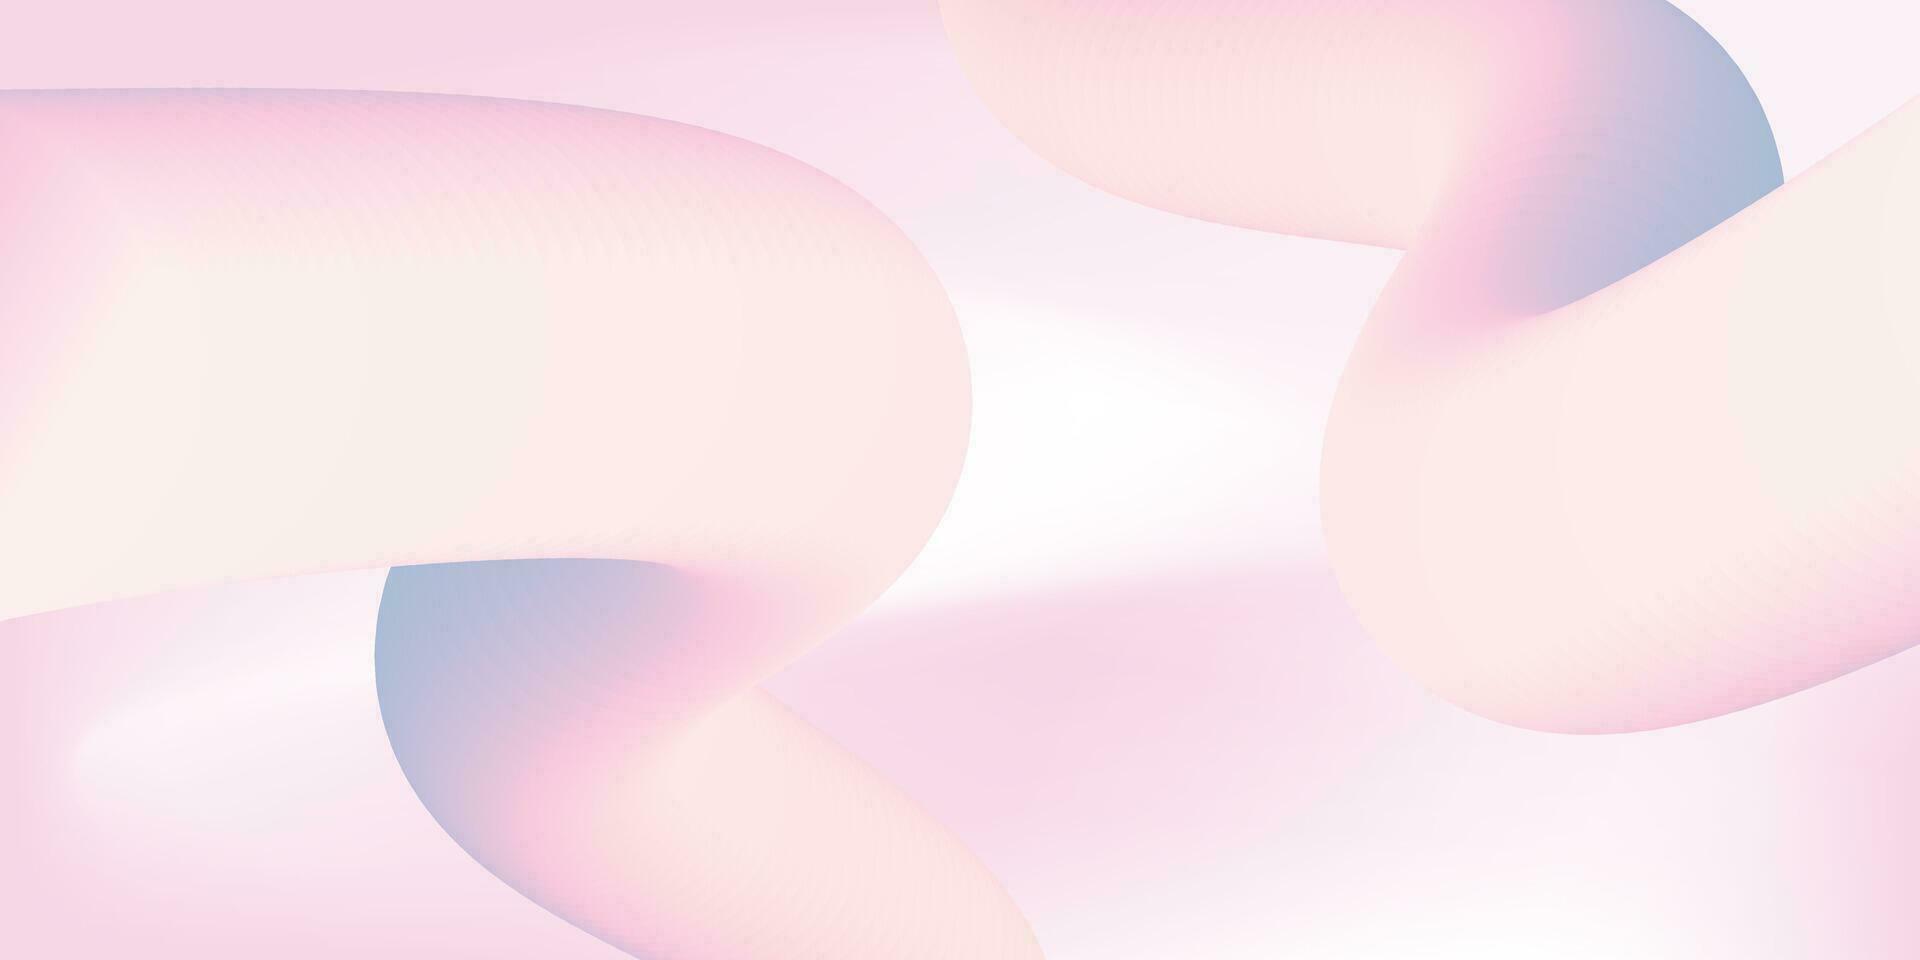 abstrakt bakgrund med vätska 3d former, glansig pastell färger, mjuk rader formning sammansättning vektor